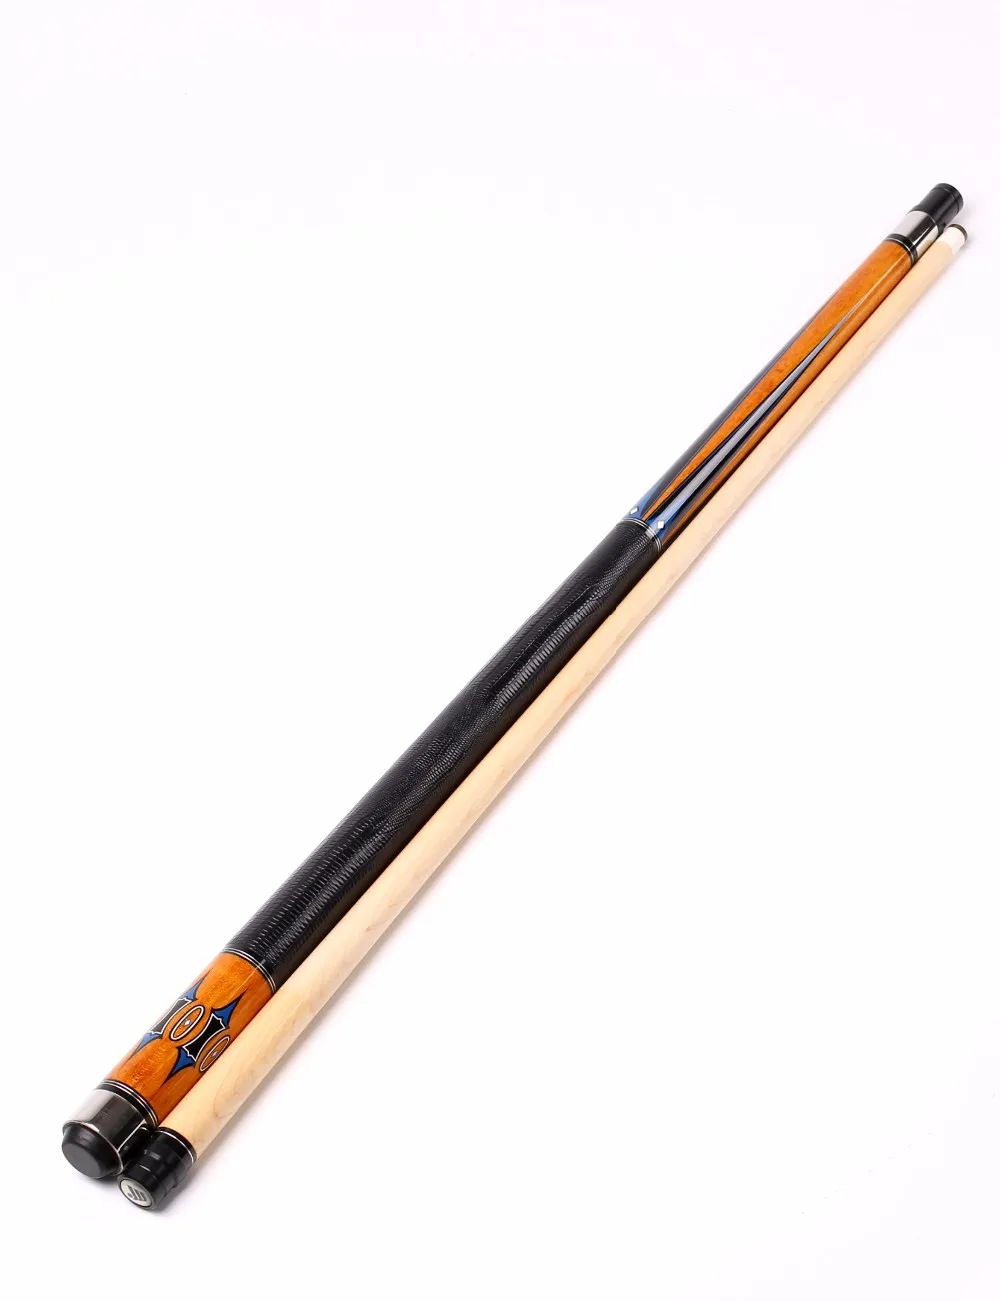  Jianying стандартный размер кленовые деревянные старые палочки для снукера бильярдного бассейна